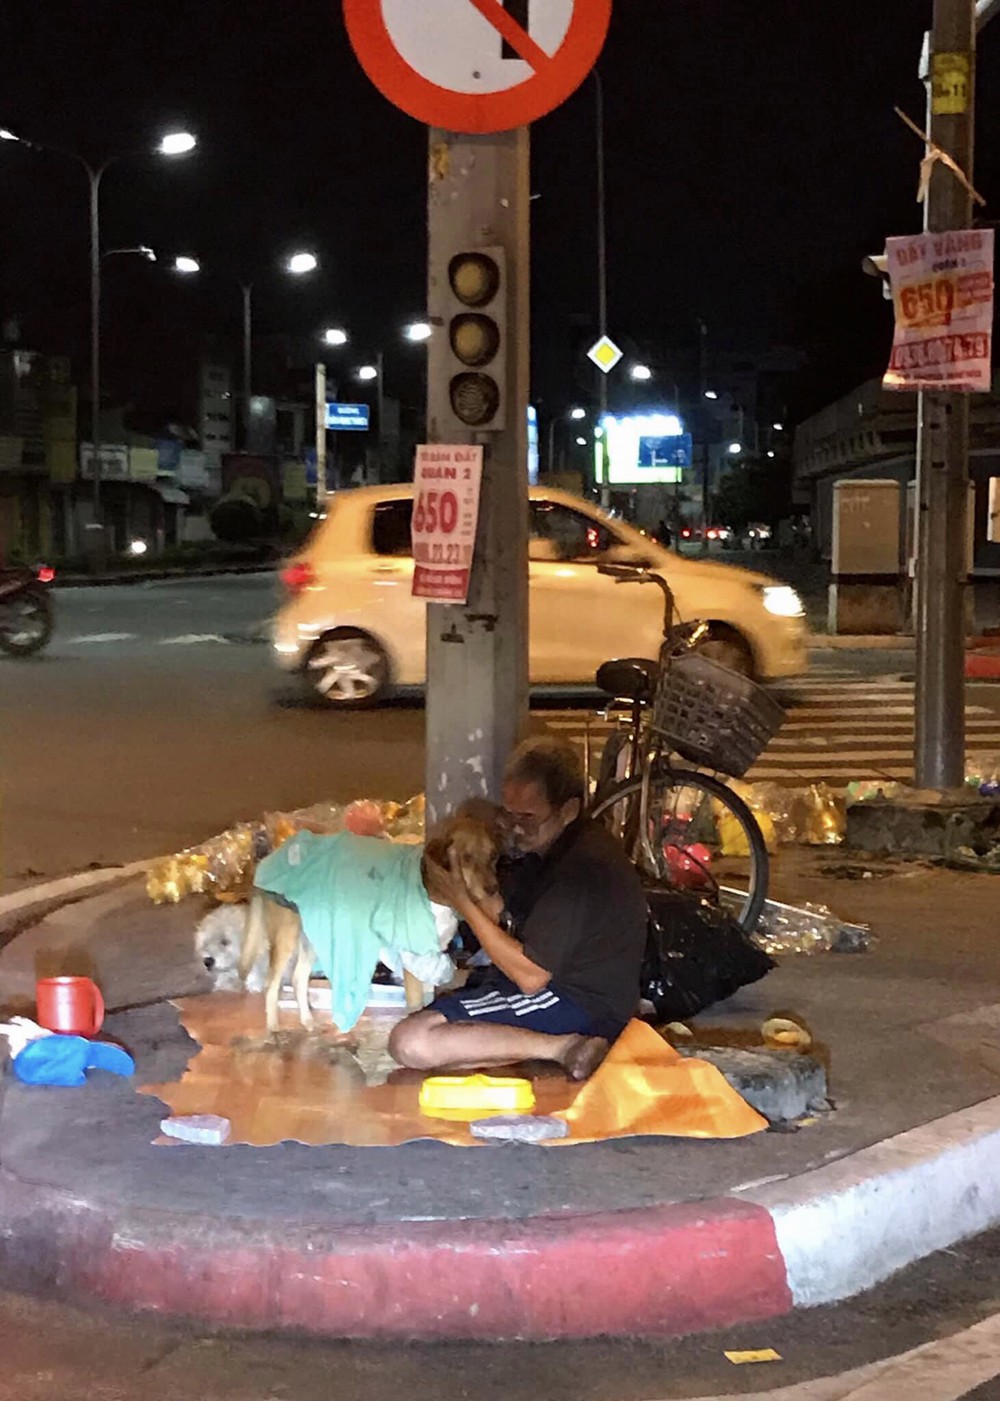 Hình ảnh cay mắt ở góc phố Sài Gòn: Cụ ông vô gia cư nhường áo, bón từng thìa thức ăn cho 2 con chó bị bỏ rơi - Ảnh 1.